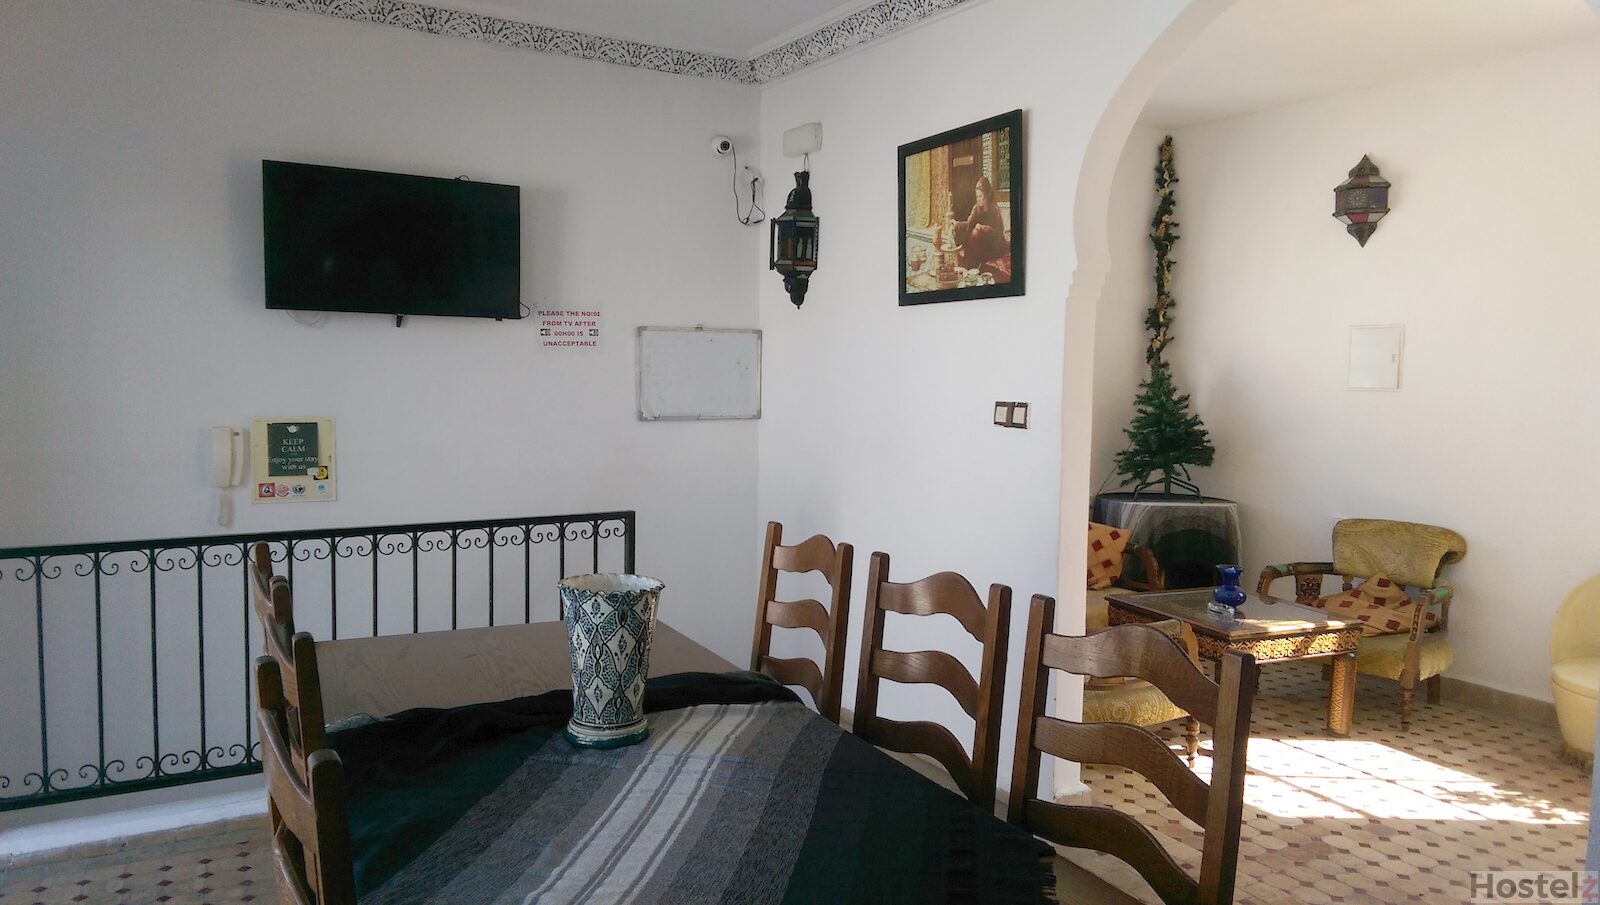 The Medina Hostel, Tangier